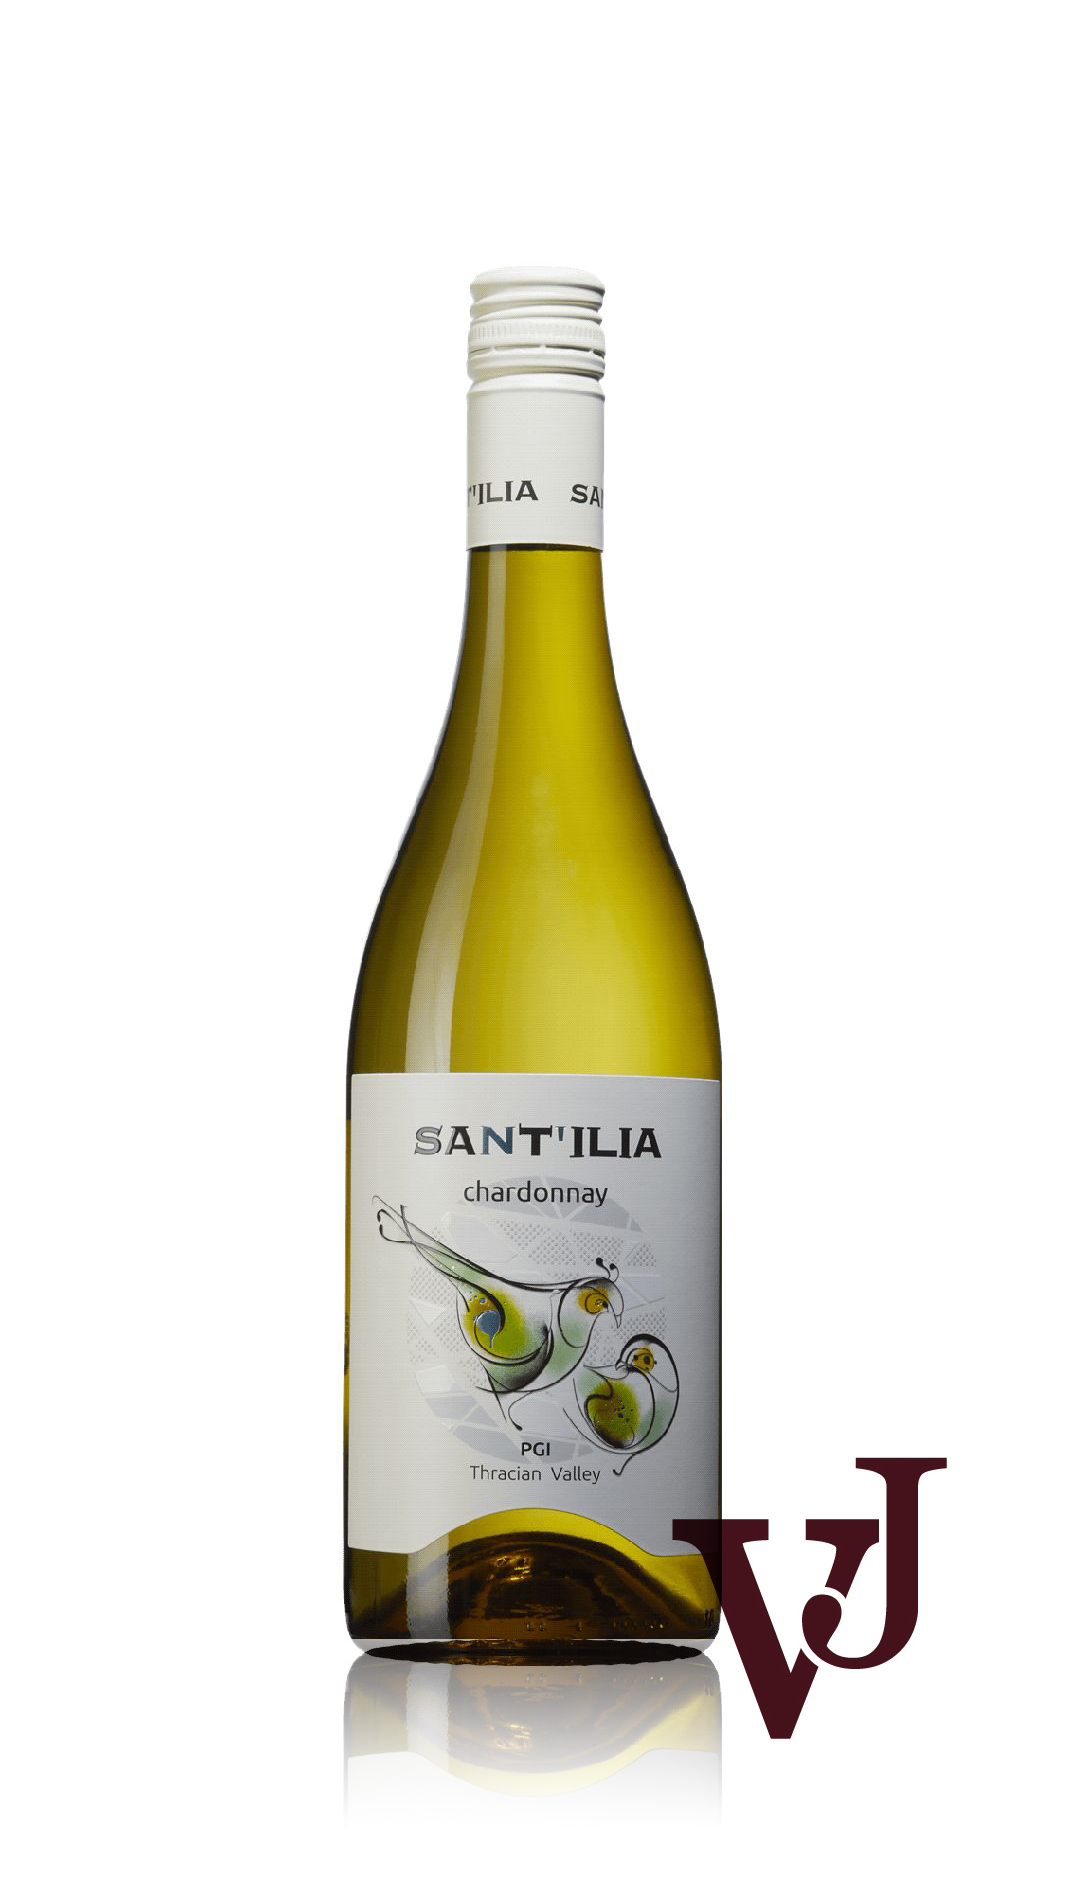 Vitt Vin - Sant'ilia Chardonnay artikel nummer 218901 från producenten Edoardo Miroglio Eood från området Bulgarien